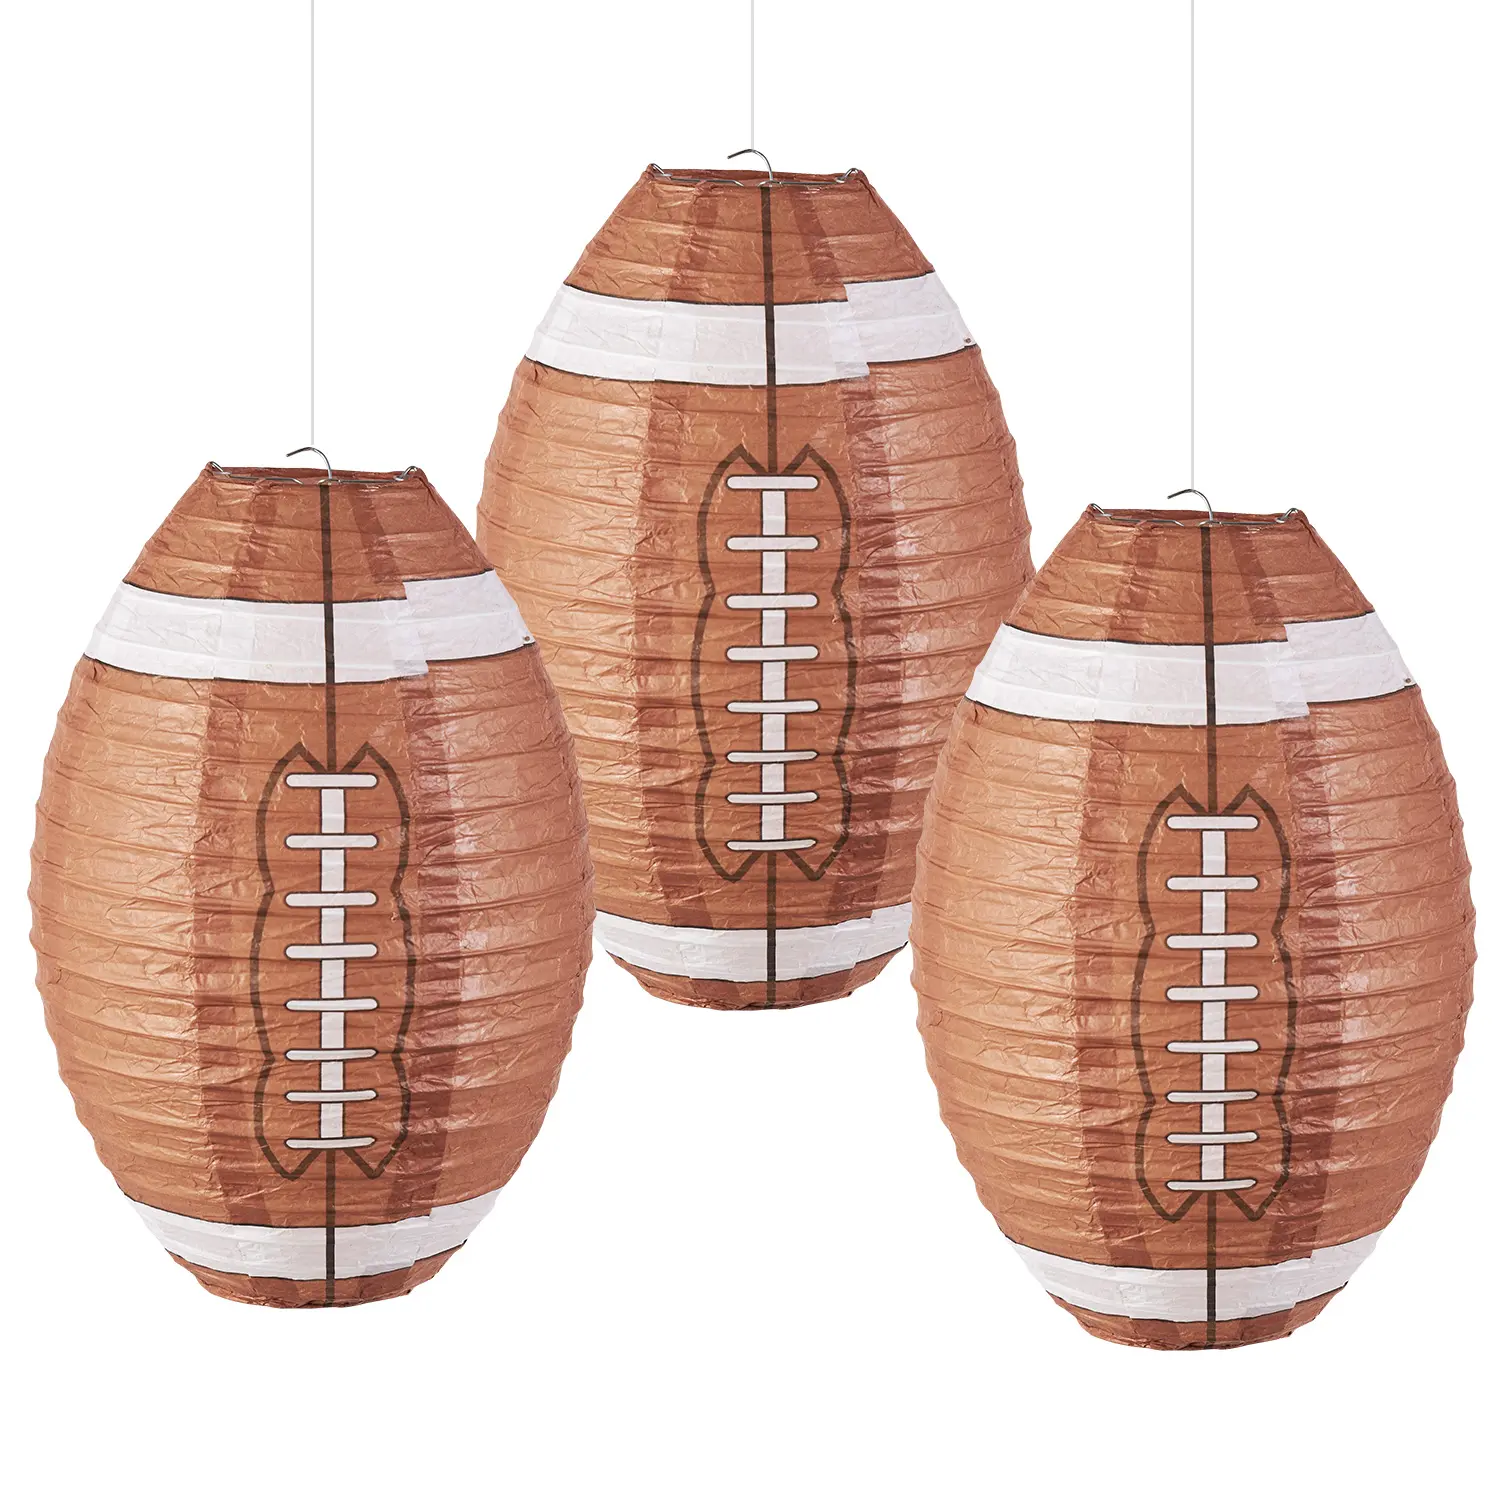 Nuevo diseño de linternas de rugby recicladas de 12 pulgadas, linternas de papel decorativas para colgar festivales